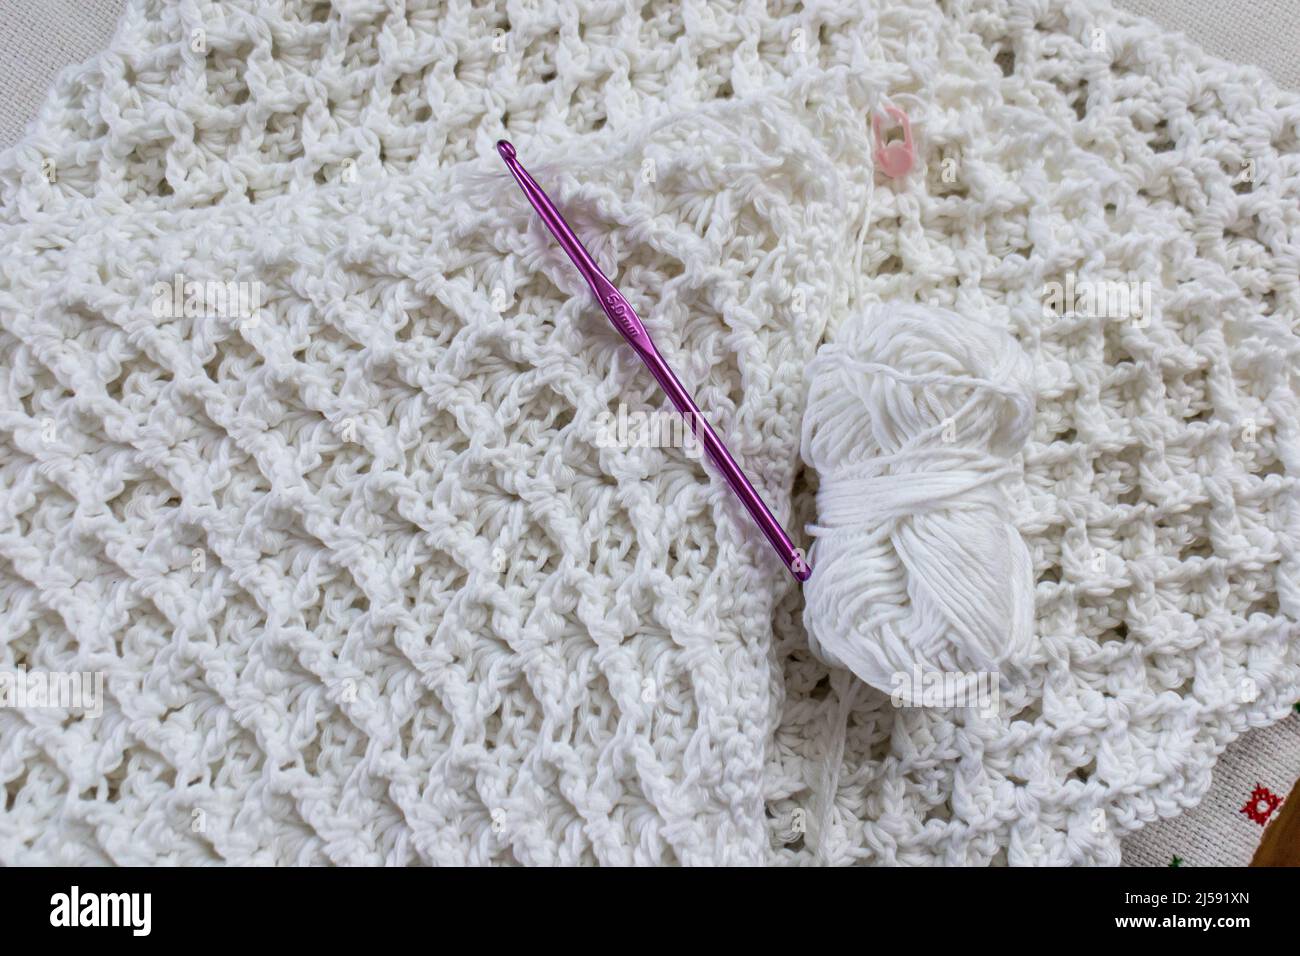 Vue de dessus d'une boule de fil, crochet en crochet violet de 5 mm, ruban  de mesure jaune, marqueur rose sur une couverture en coton blanc  partiellement fini, original en relief Photo